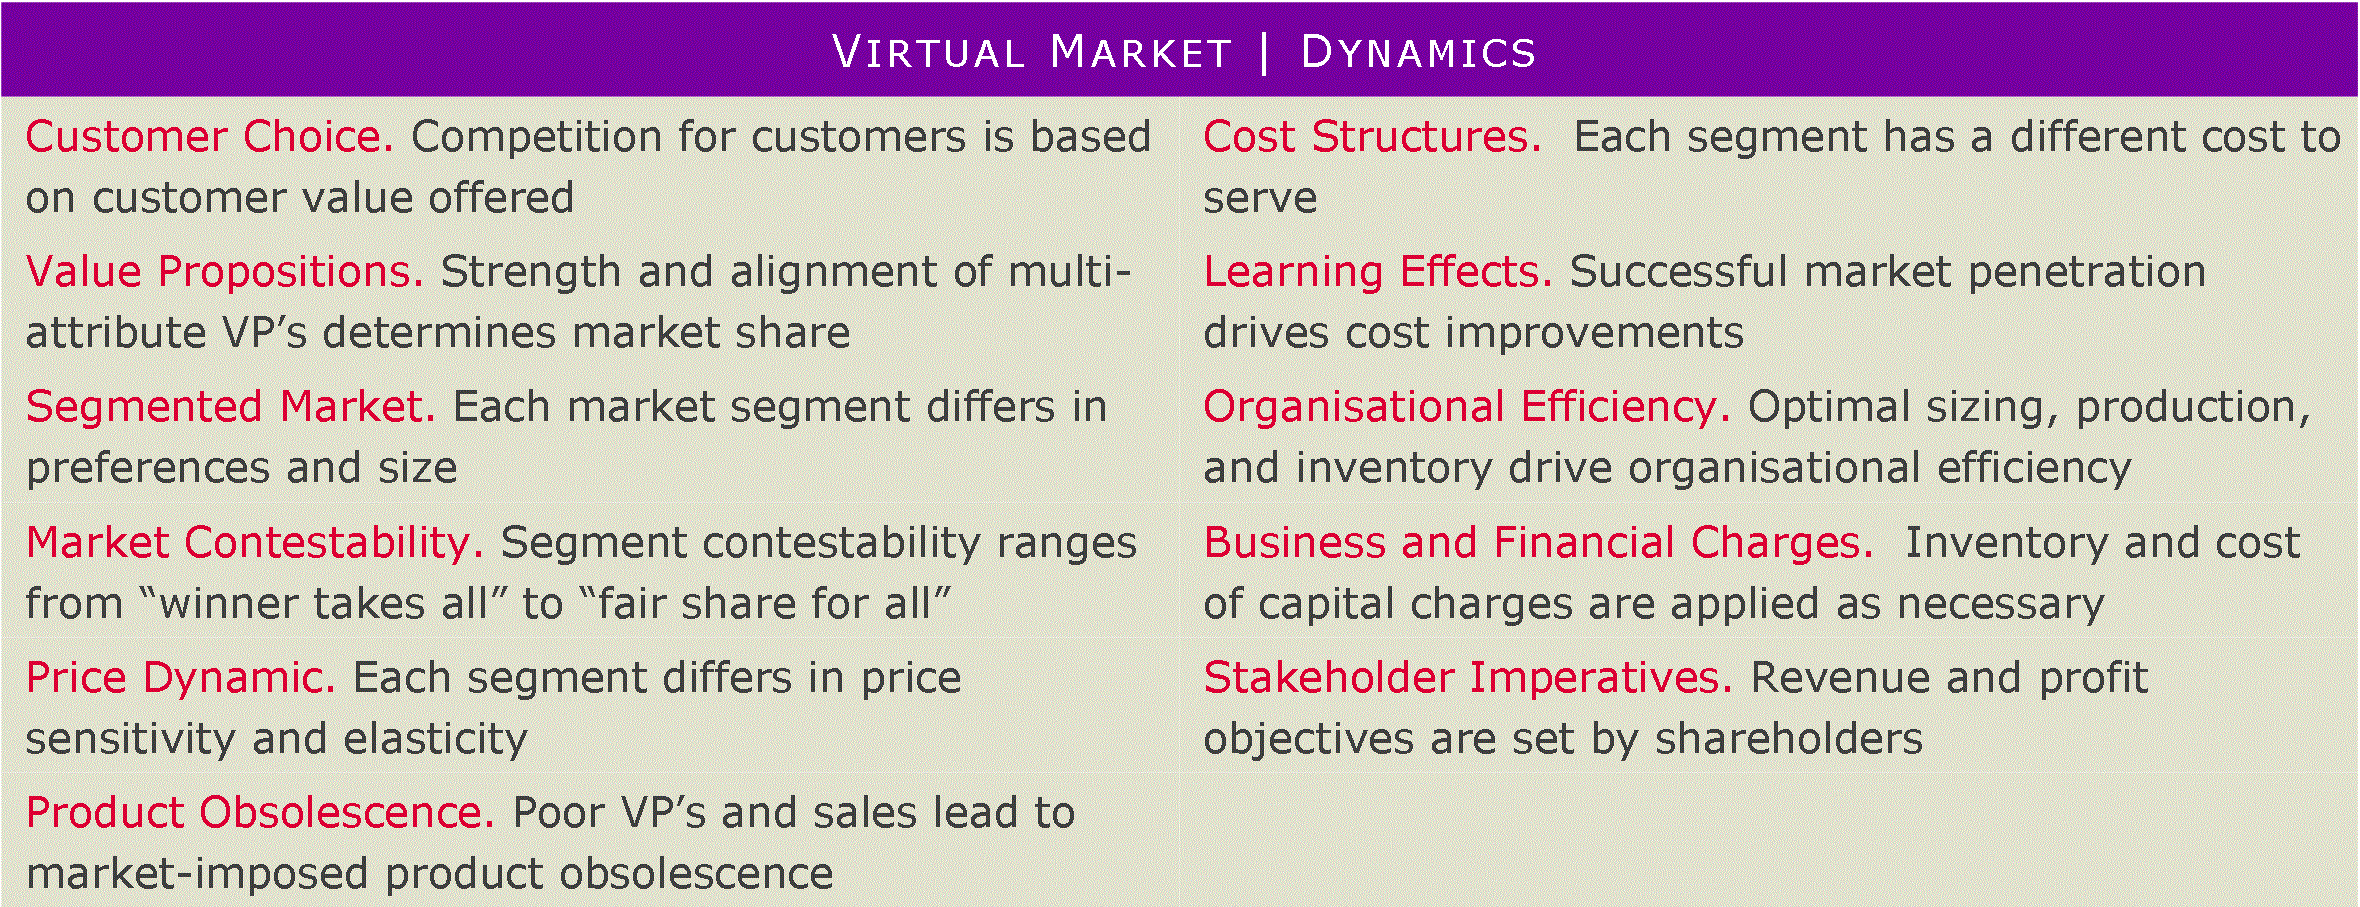 Virtual Market Dynamics